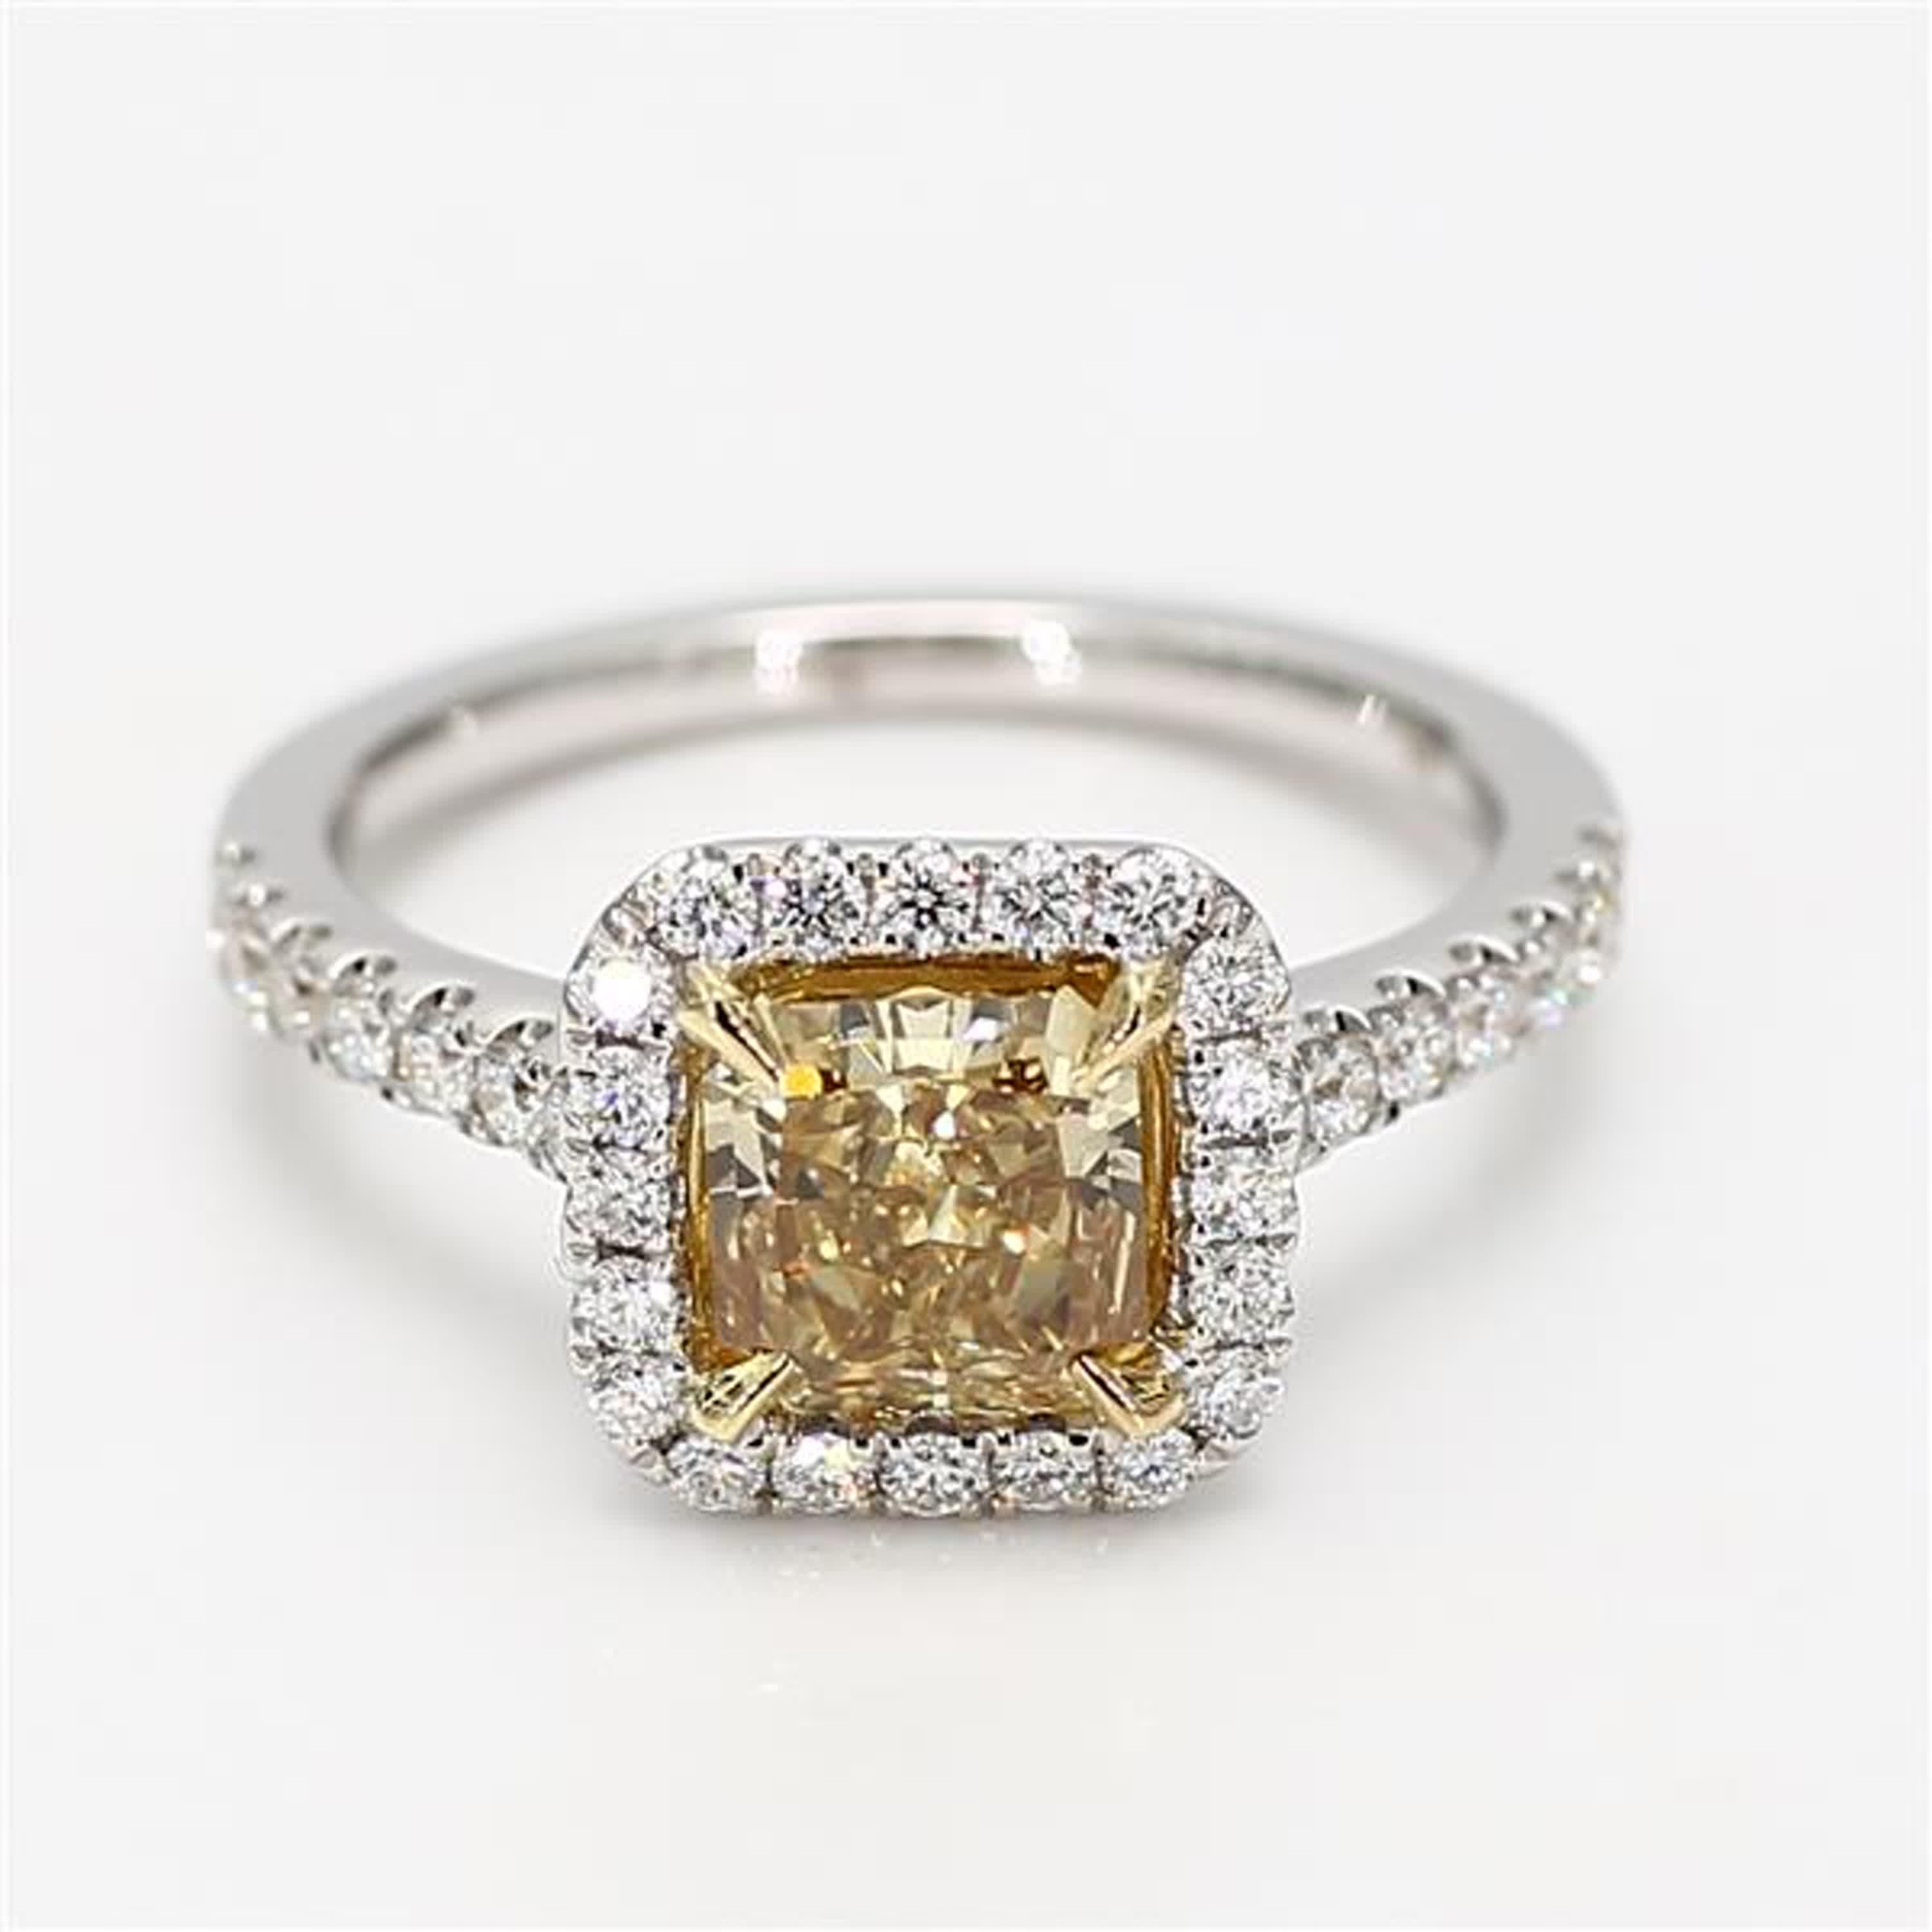 Der klassische GIA-zertifizierte Diamantring von RareGemWorld. Montiert in einer schönen Fassung aus 18 Karat Gelb- und Weißgold mit einem gelben Diamanten im natürlichen Strahlenschliff. Der gelbe Diamant ist von runden weißen Naturdiamanten